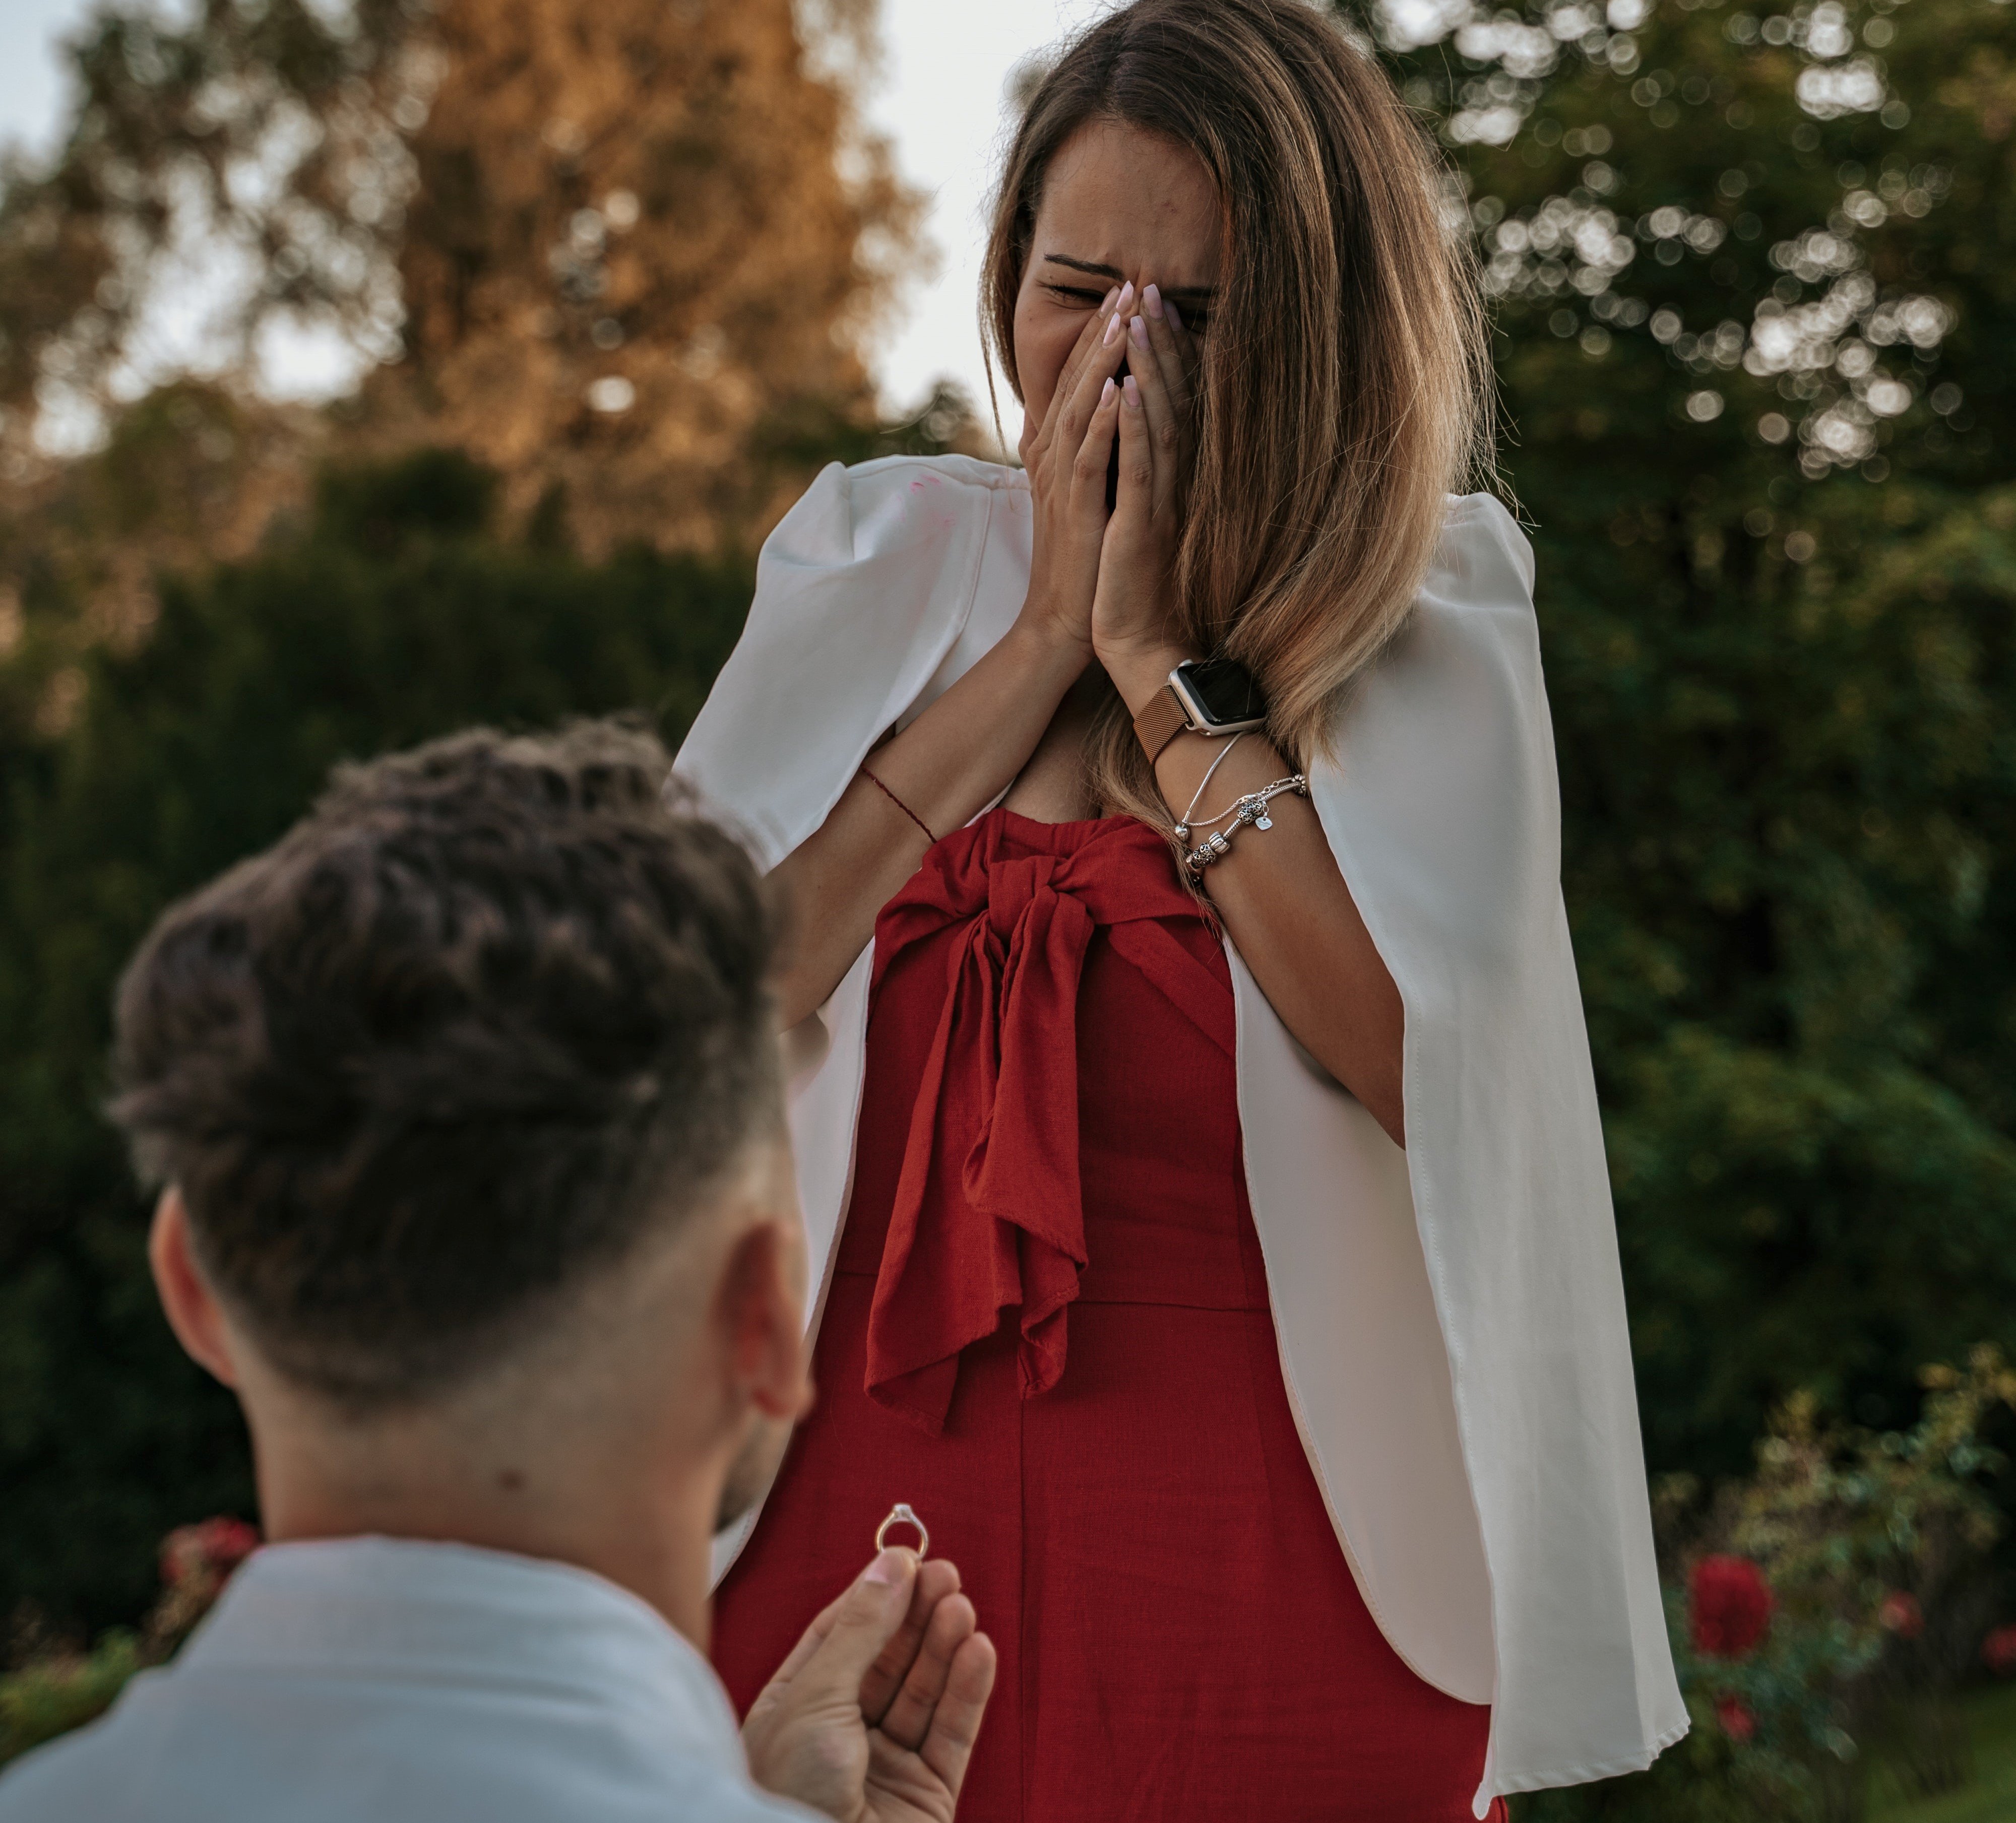 Berta war begeistert, als Tobias ihr einen Heiratsantrag machte. | Quelle: Unsplash